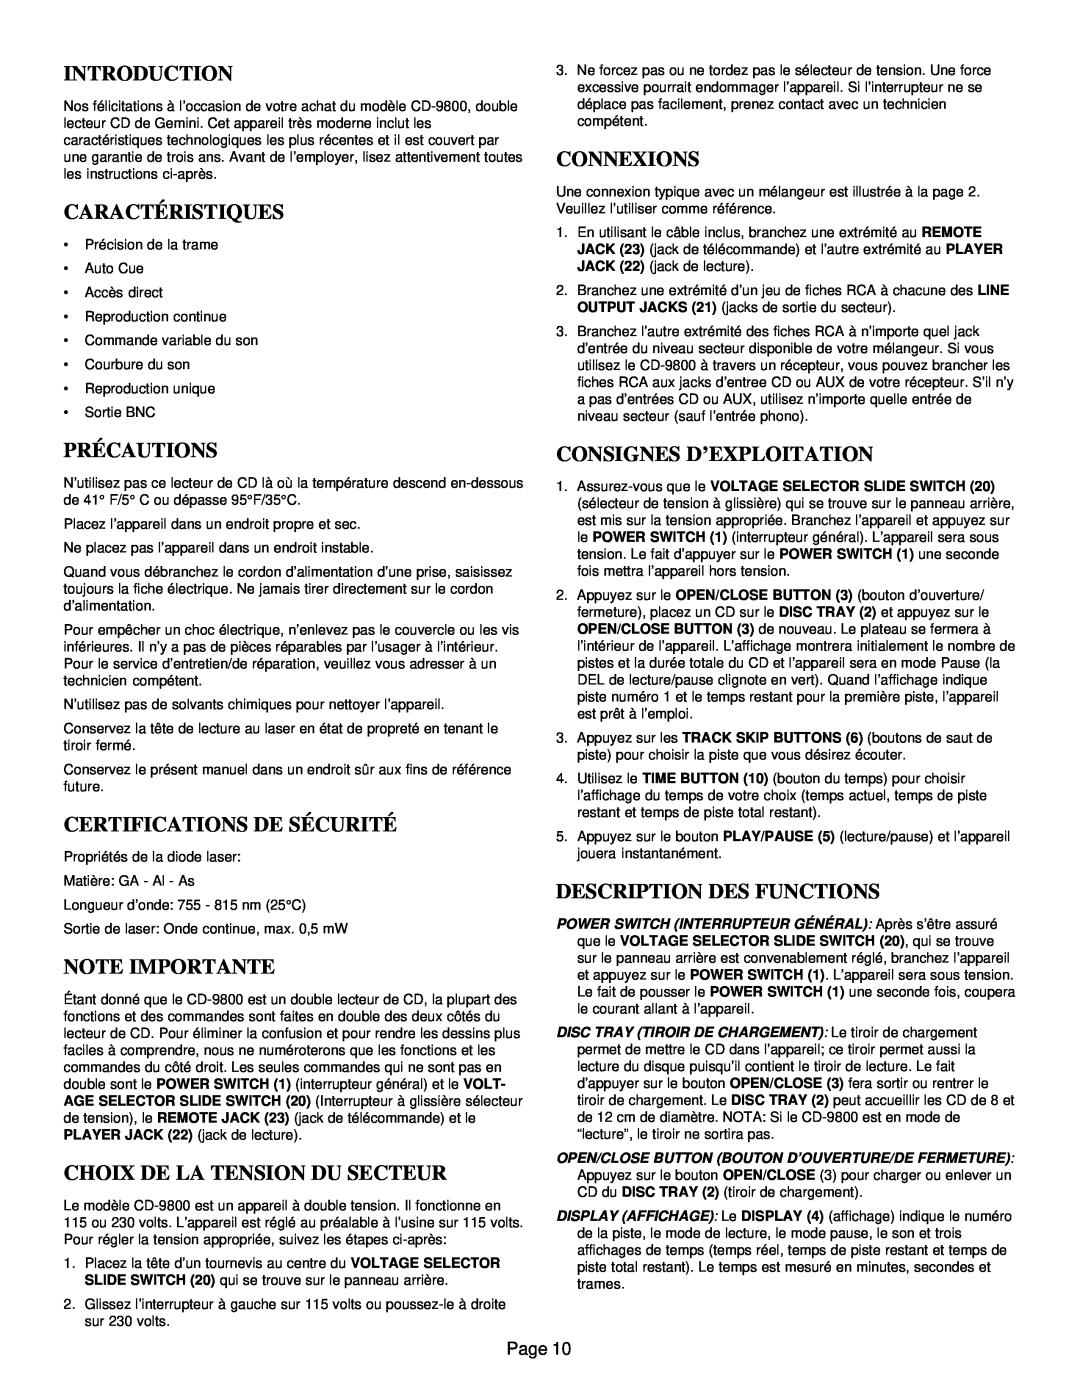 Gemini CD-9800 Caractéristiques, Connexions, Précautions, Certifications De Sécurité, Note Importante, Introduction, Page 